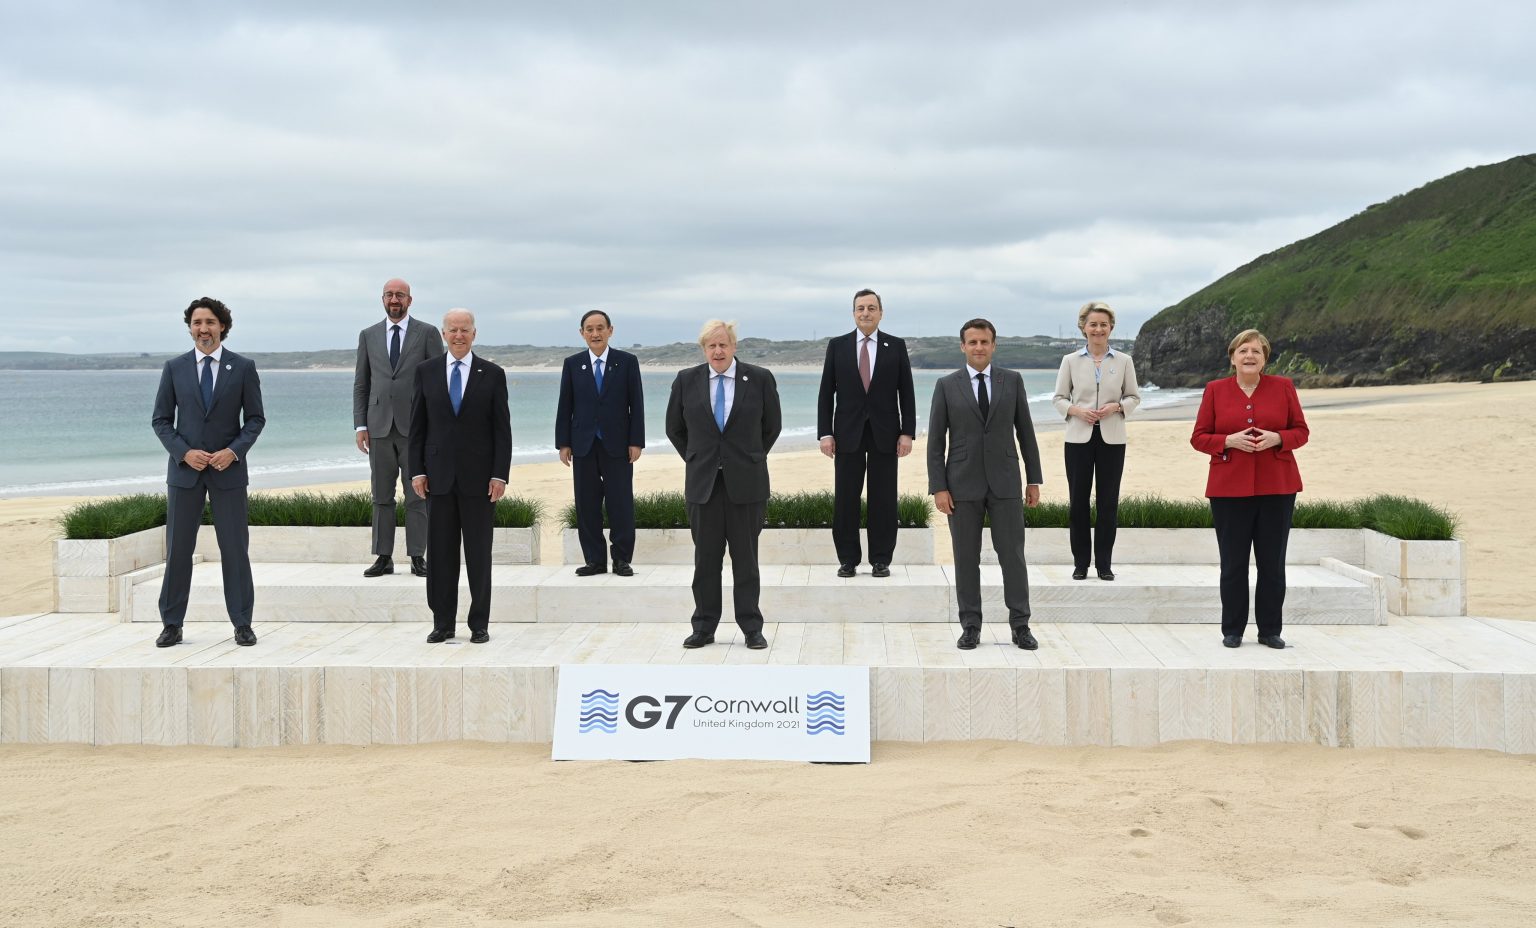 G7, Gender Quotas and Increasing Women's Leadership Worldwide Weekend